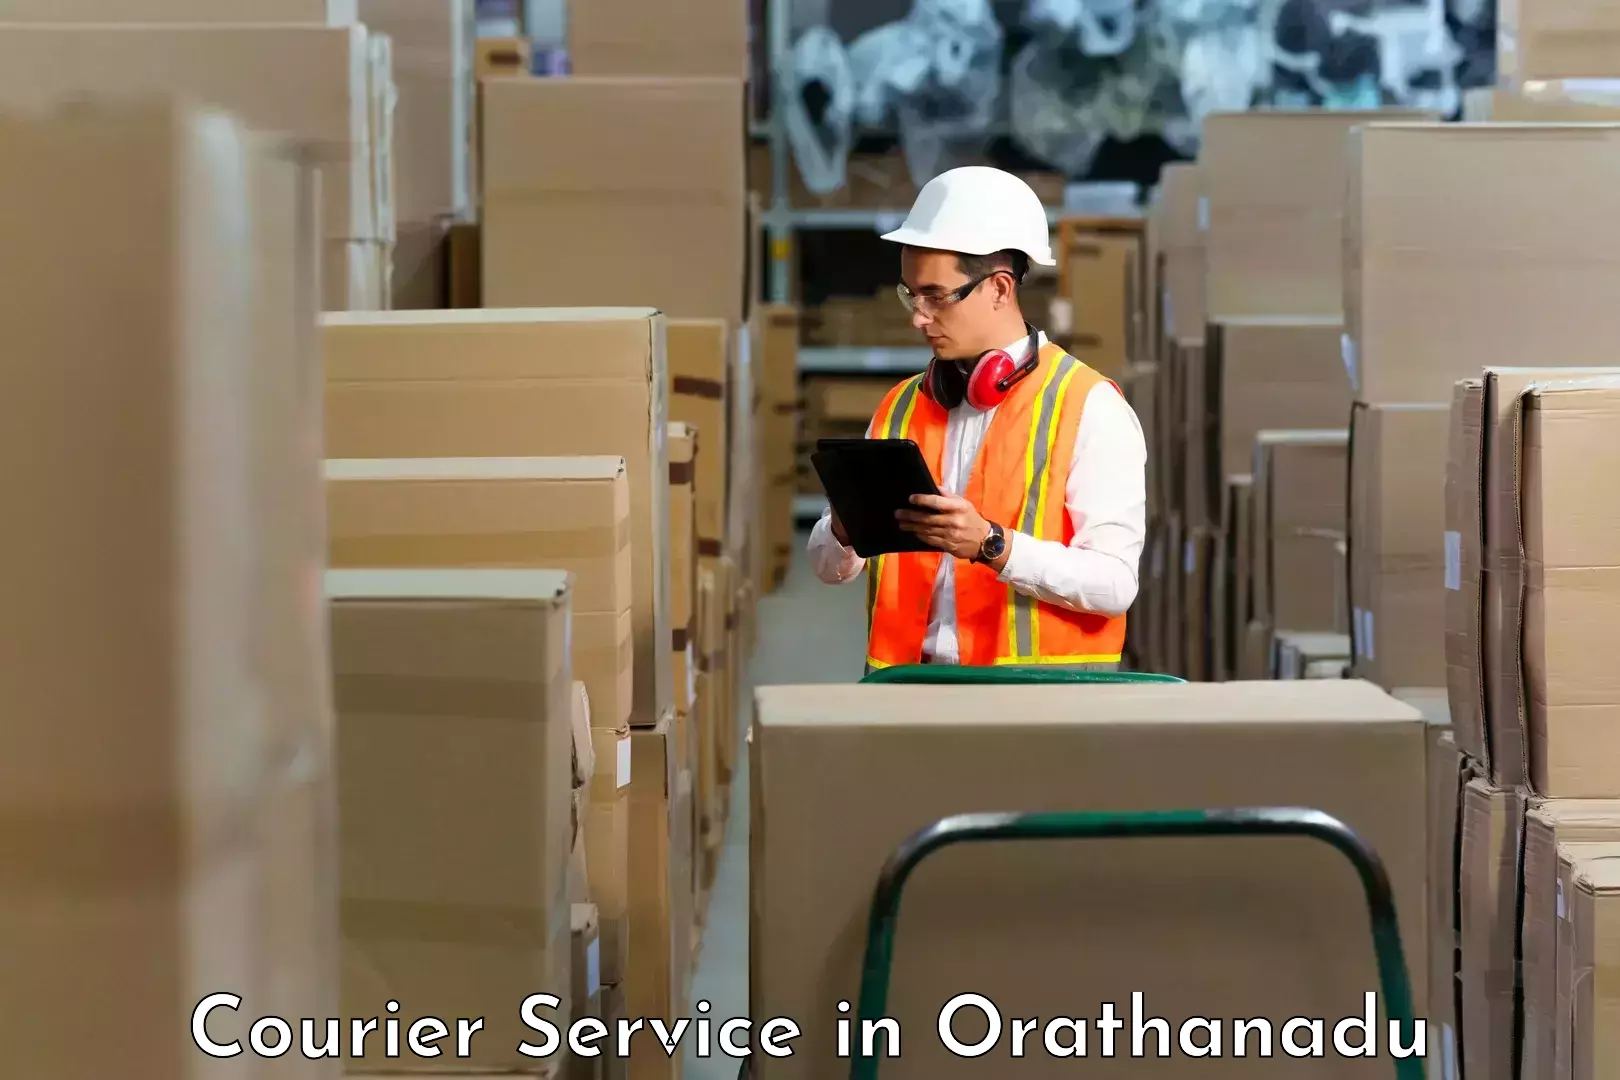 Lightweight parcel options in Orathanadu